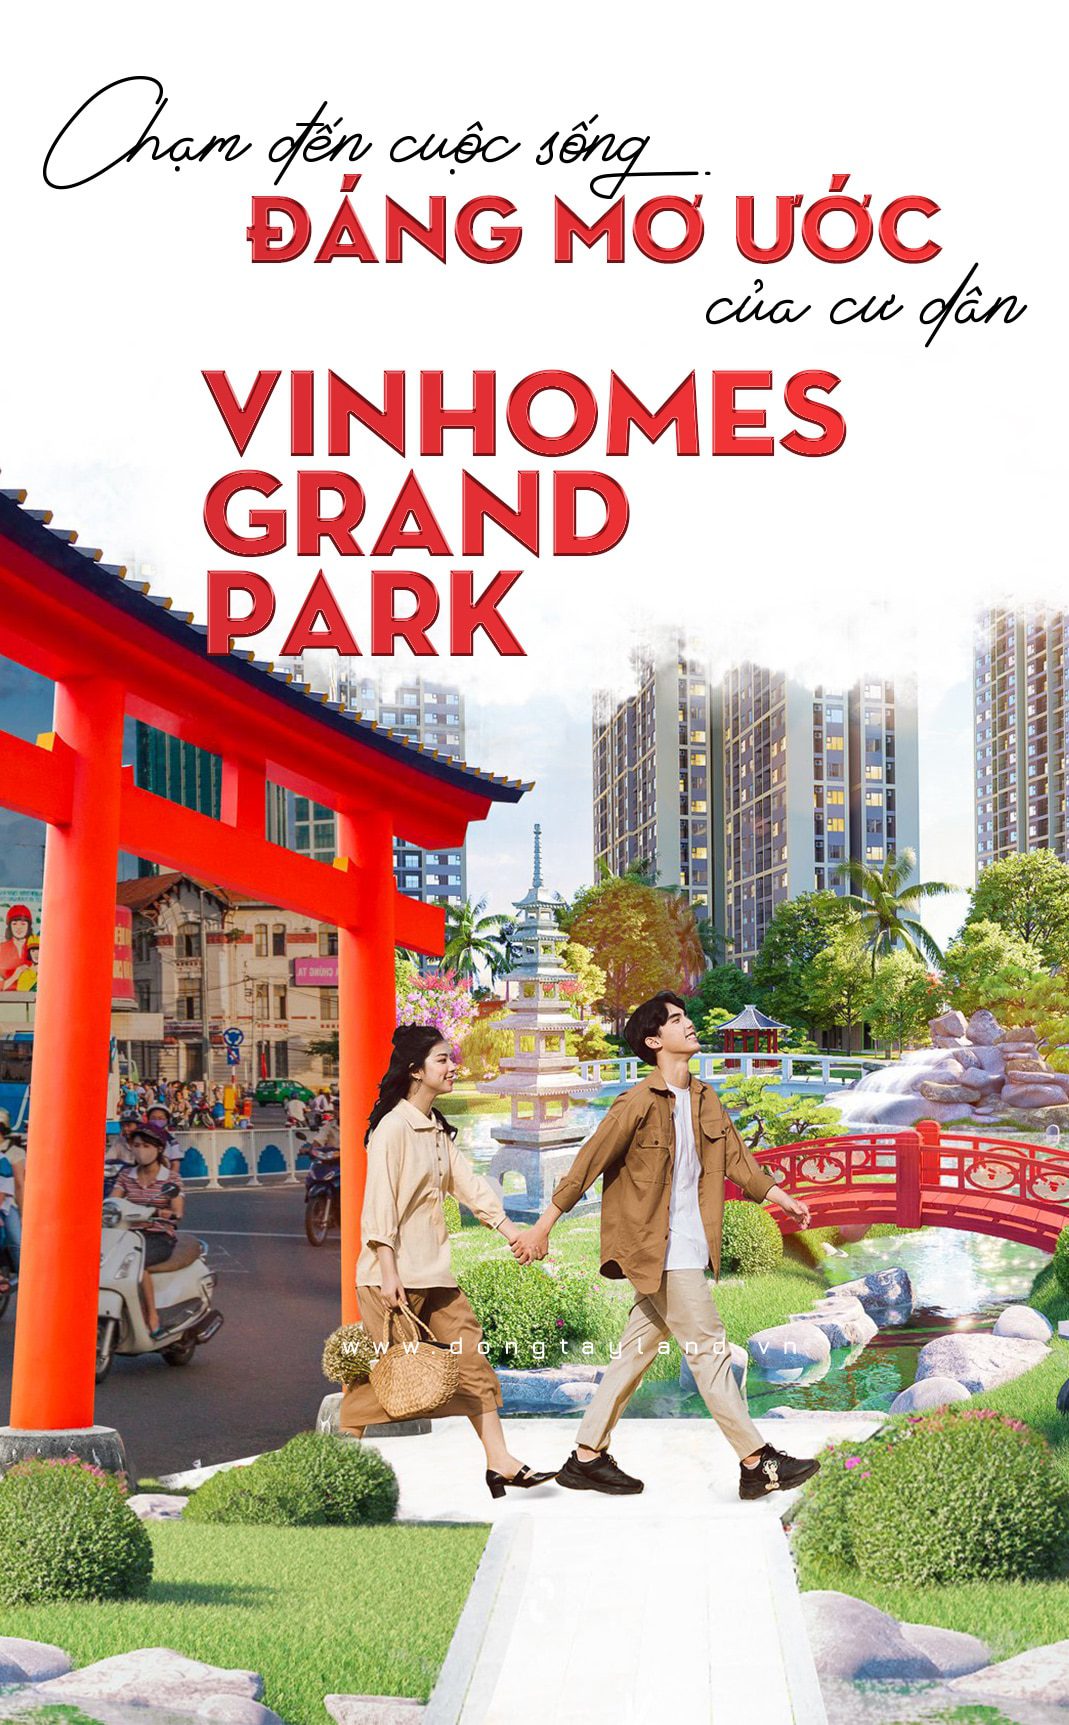 Cuộc sống mơ ước của cư dân Vinhomes Grand Park